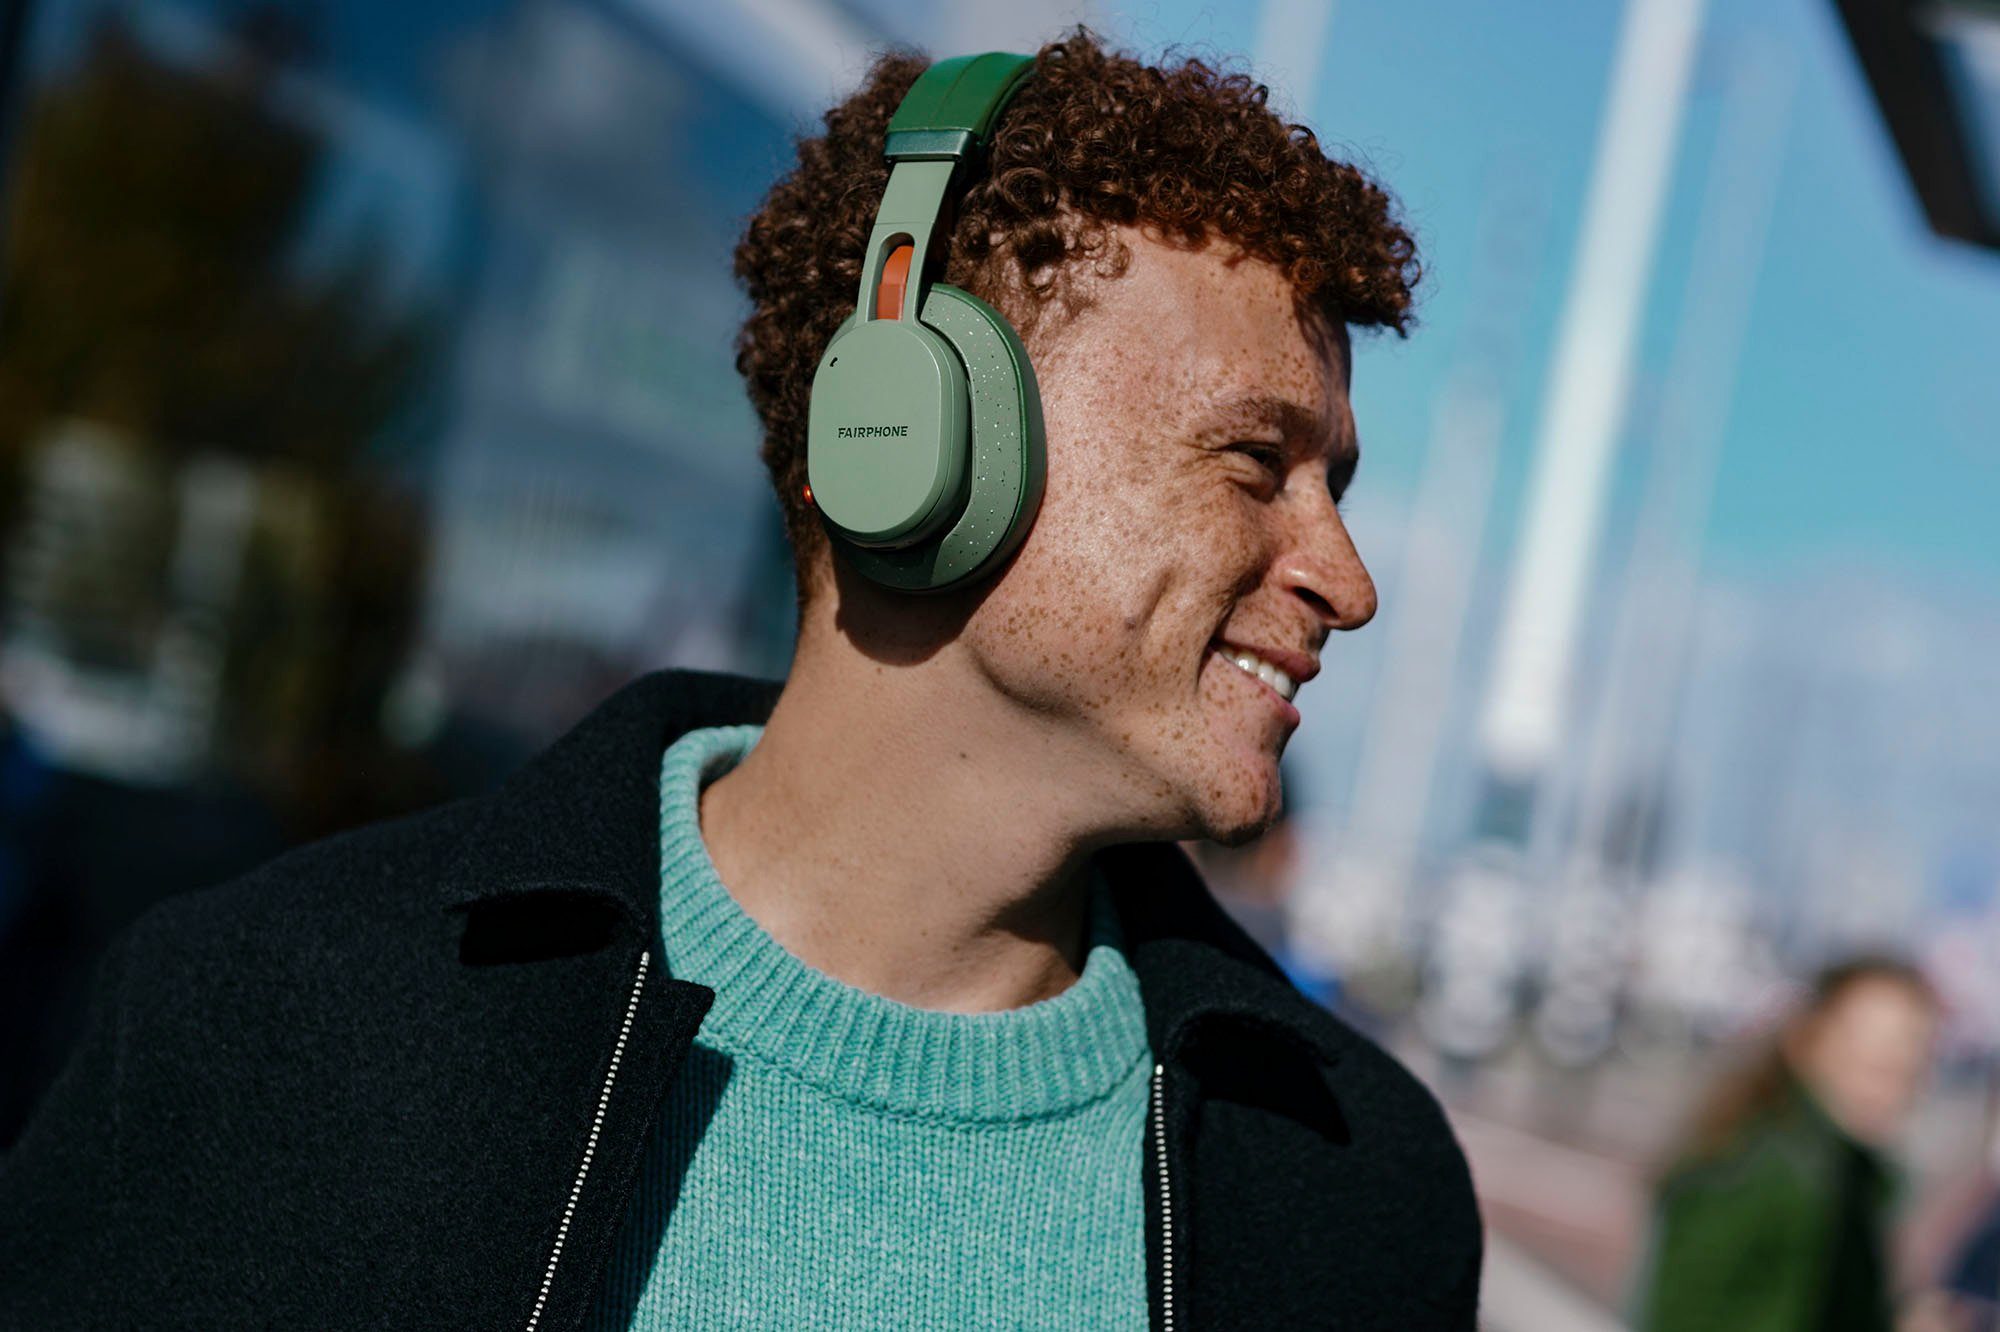 Fairbuds (ANC), Cancelling (Active Fairphone Bluetooth) grün Over-Ear-Kopfhörer XL Noise